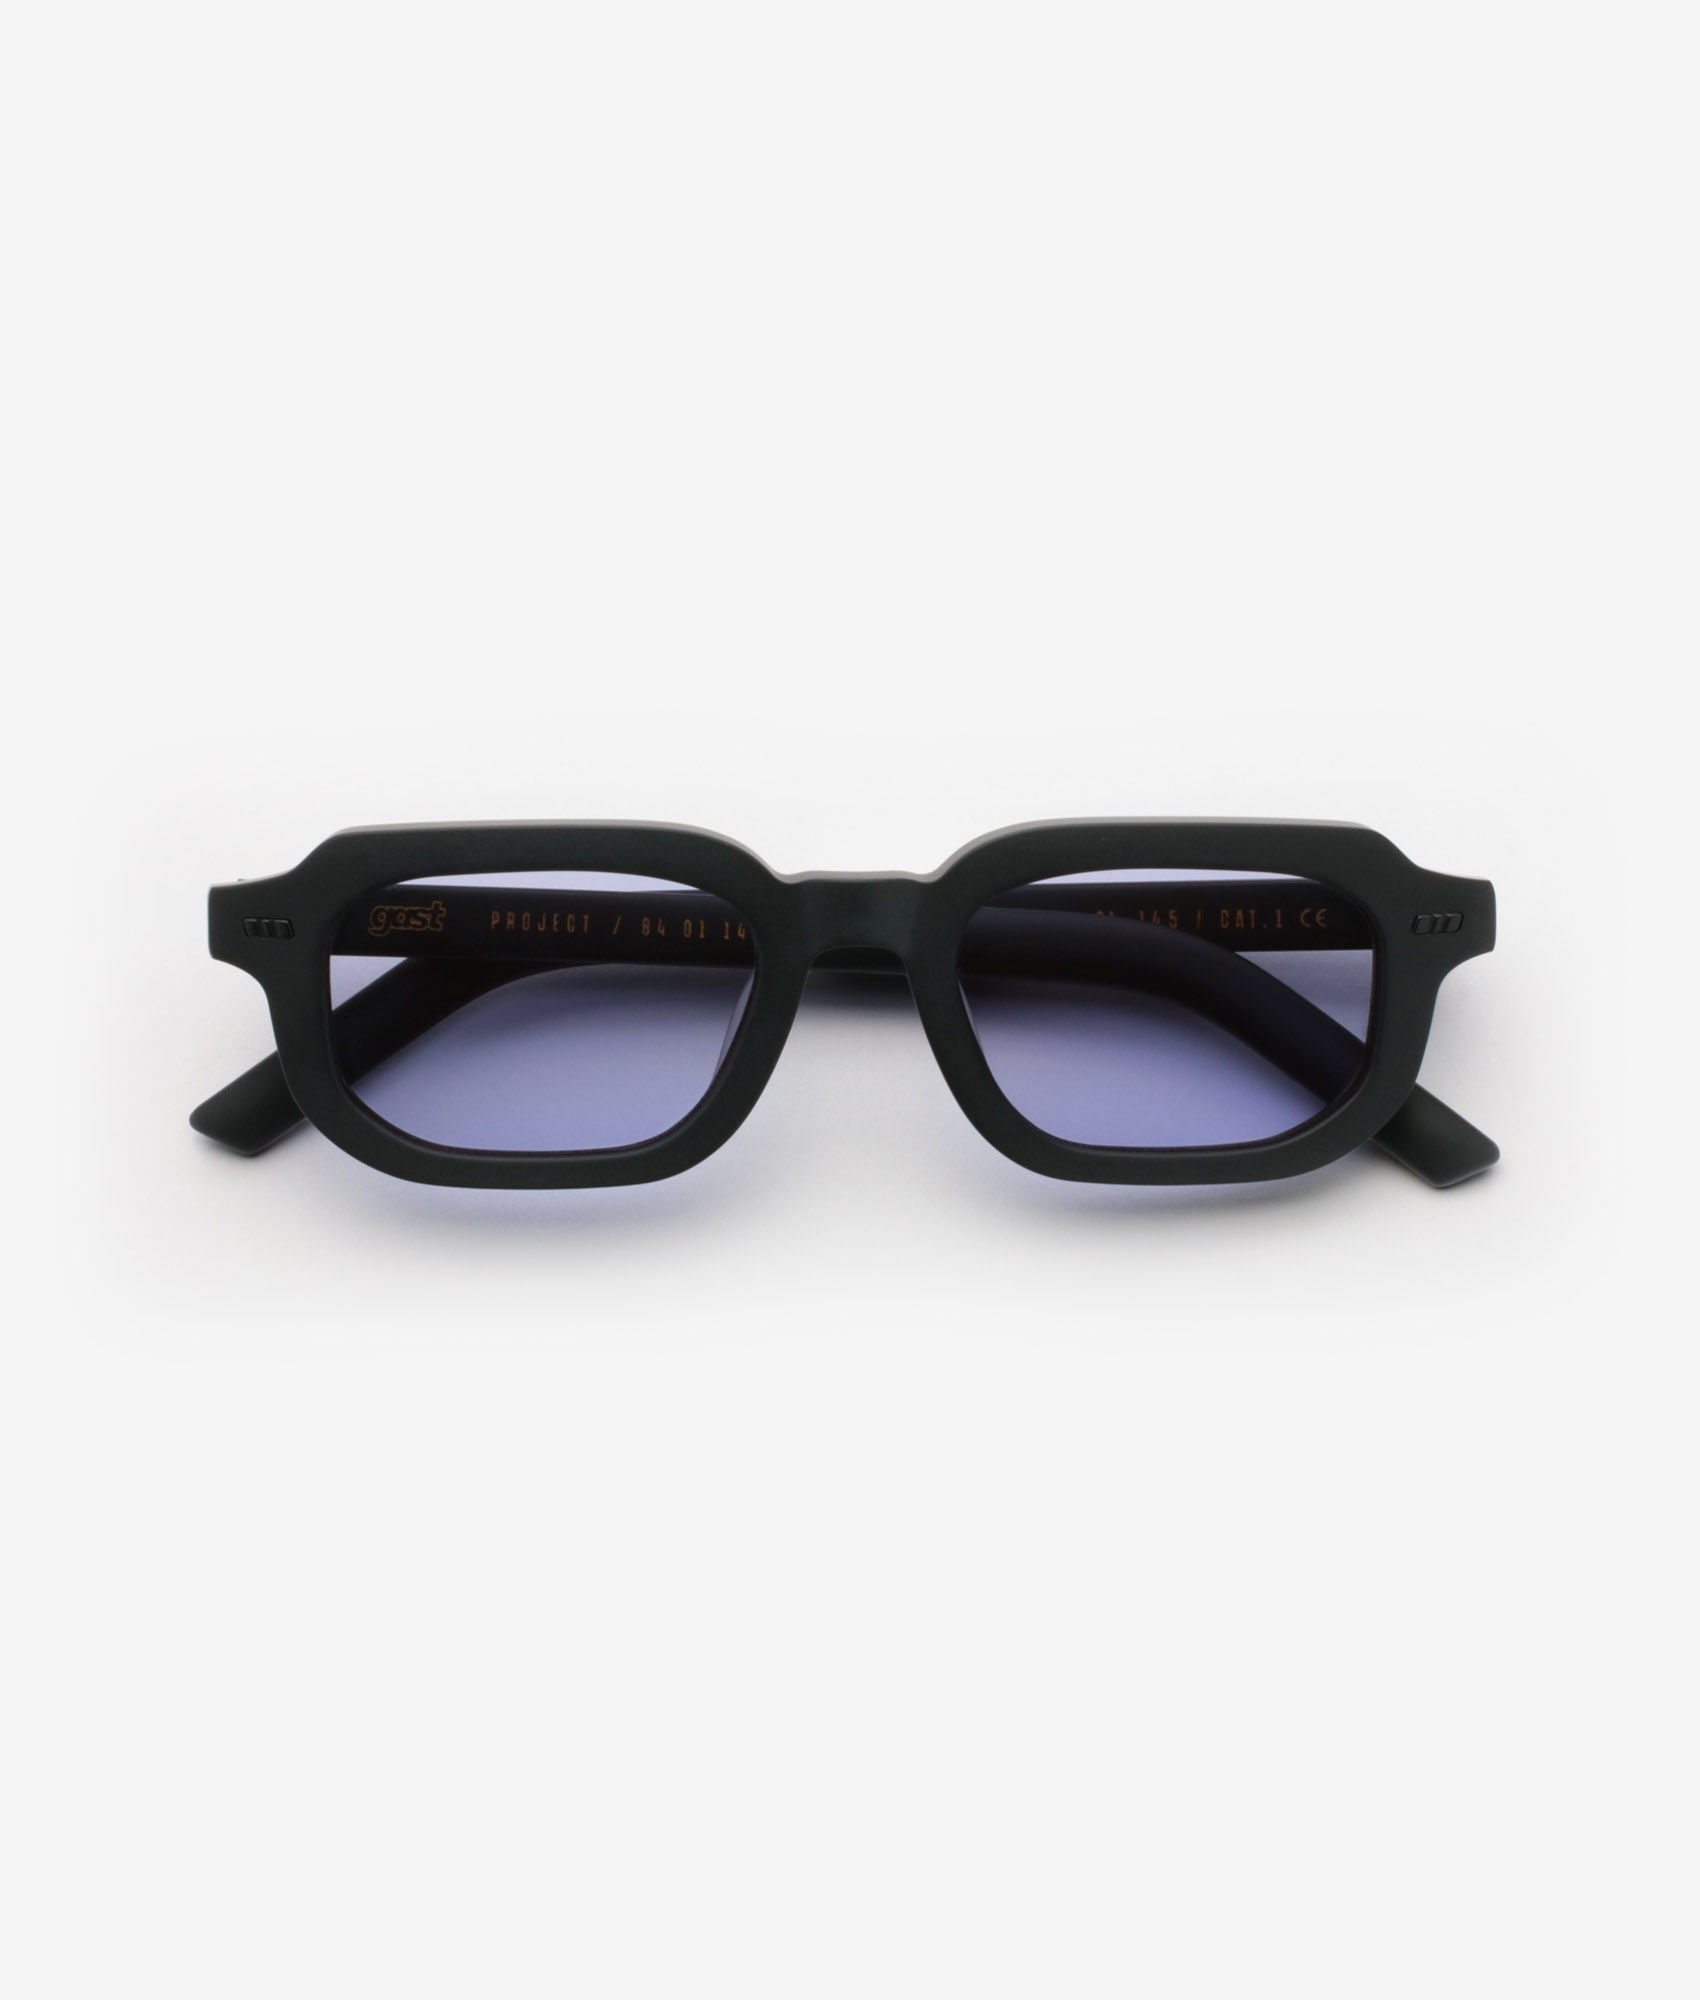 PAI Light Purple GAST Sunglasses